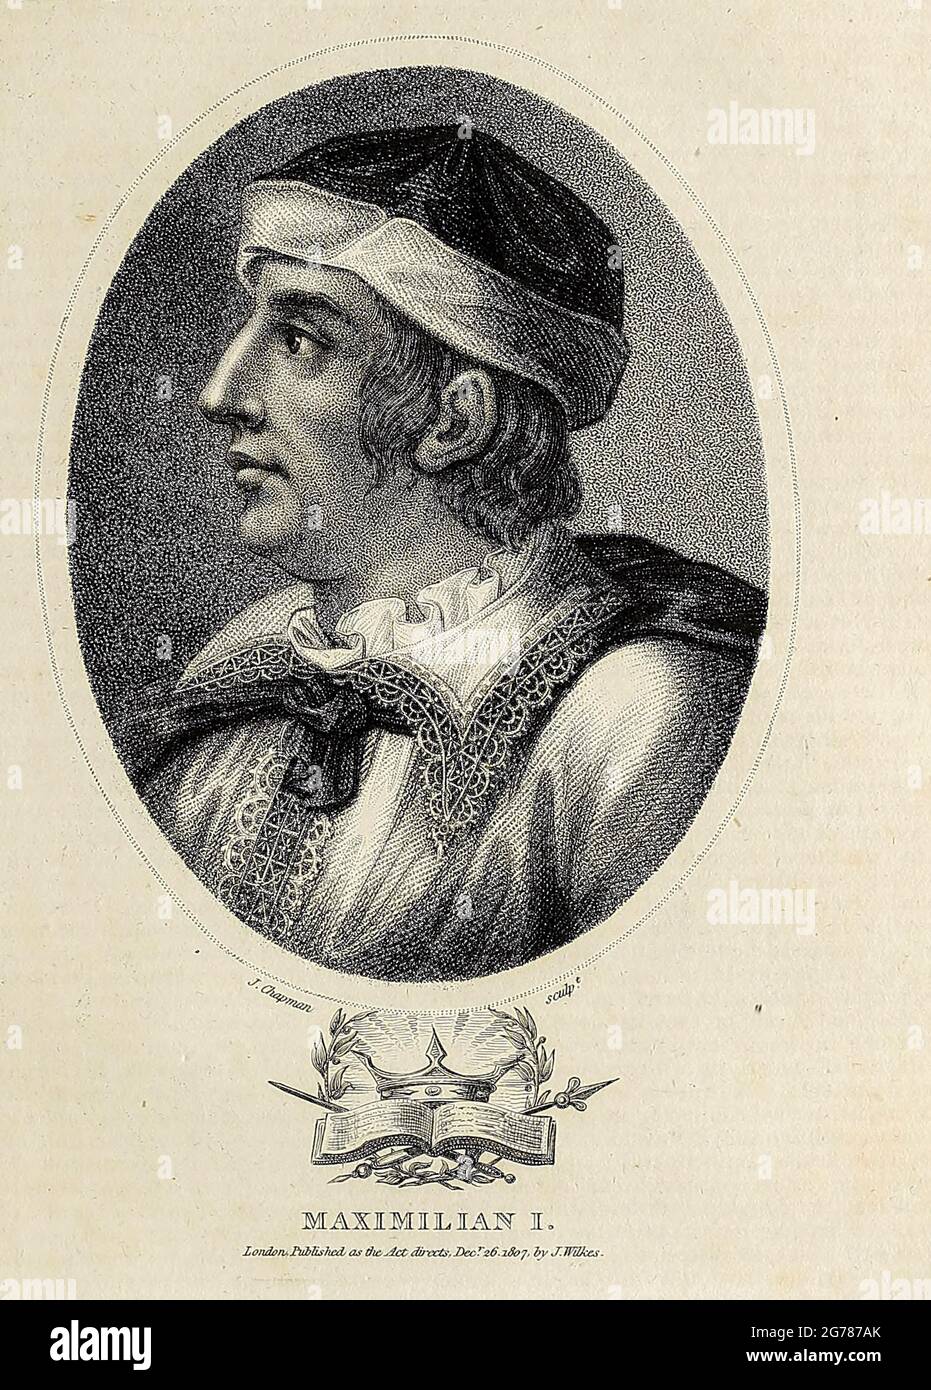 Maximilian I (22 mars 1459 – 12 janvier 1519) fut roi des Romains de 1486 et empereur romain Saint de 1508 jusqu'à sa mort. Il n'a jamais été couronné par le pape, car le voyage à Rome était toujours trop risqué. Il fut au contraire proclamé empereur élu par le Pape Julius II à Trent, brisant ainsi la longue tradition d'exiger un couronnement papal pour l'adoption du titre impérial. Maximilian était le fils de Frédéric III, le Saint empereur romain, et Éléanor du Portugal. Gravure sur plaque de coperplate de l'Encyclopedia Londinensis or, Dictionnaire universel des arts, des sciences et de la littérature; Volume VIII; E Banque D'Images